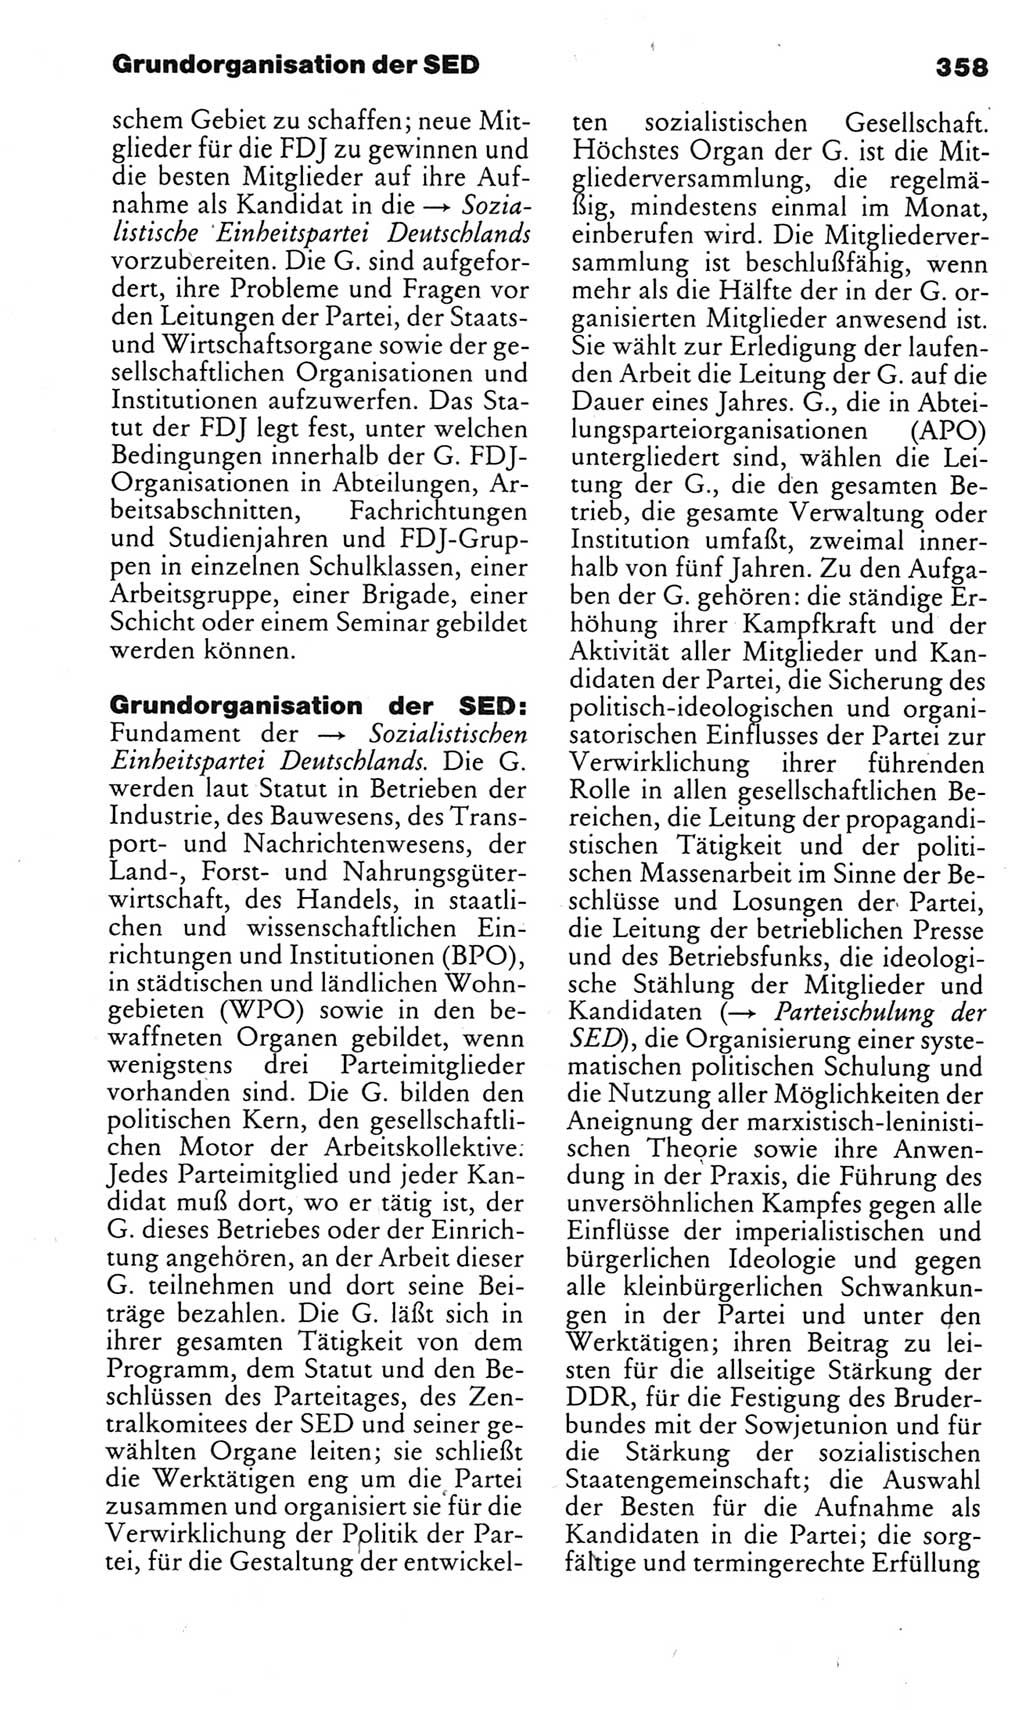 Kleines politisches Wörterbuch [Deutsche Demokratische Republik (DDR)] 1983, Seite 358 (Kl. pol. Wb. DDR 1983, S. 358)